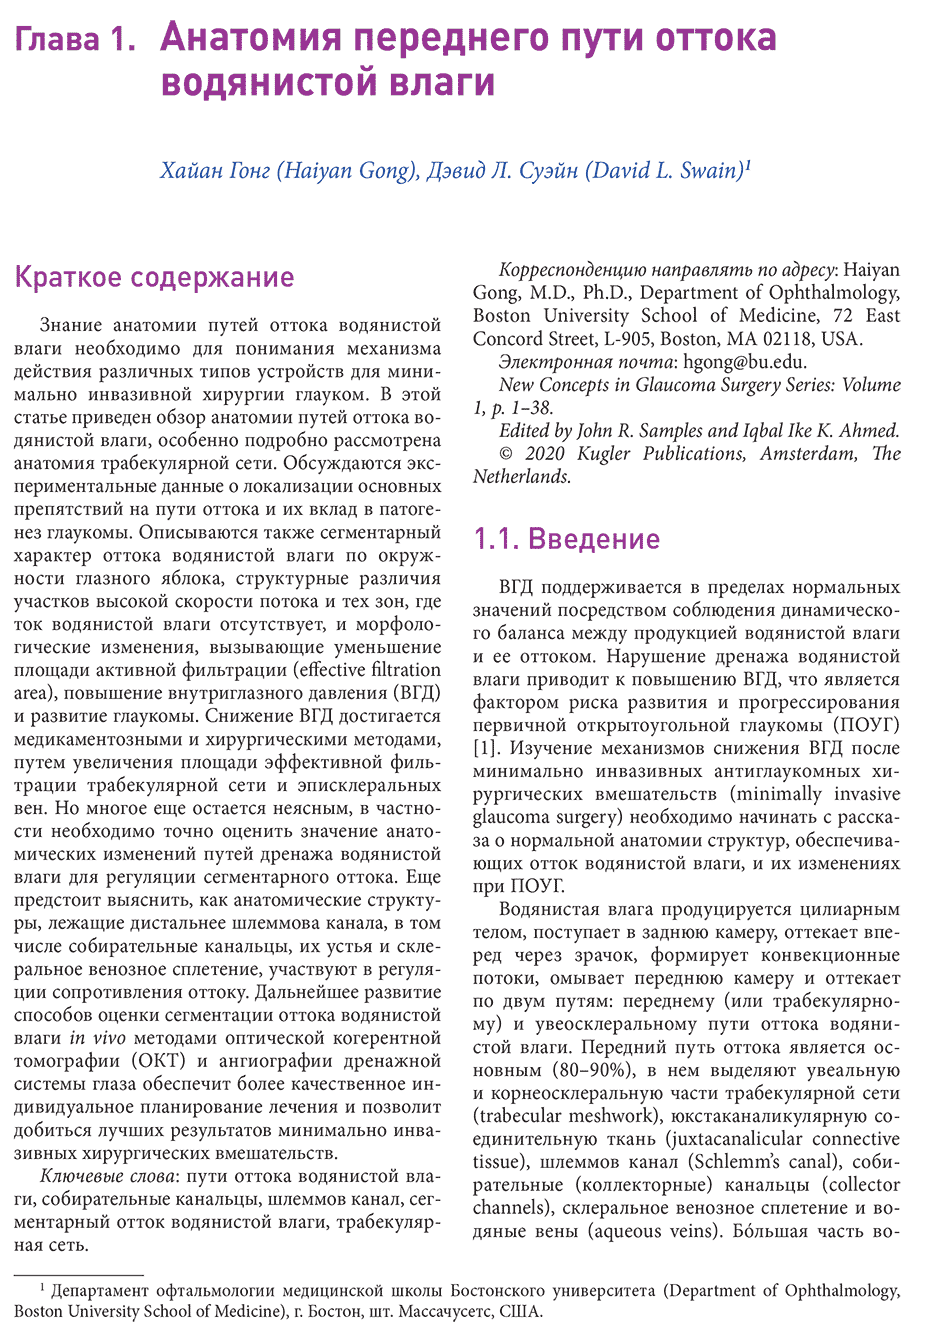 Пример страницы из книги "Новые концепции в хирургии глаукомы" - Сэмплс Дж.